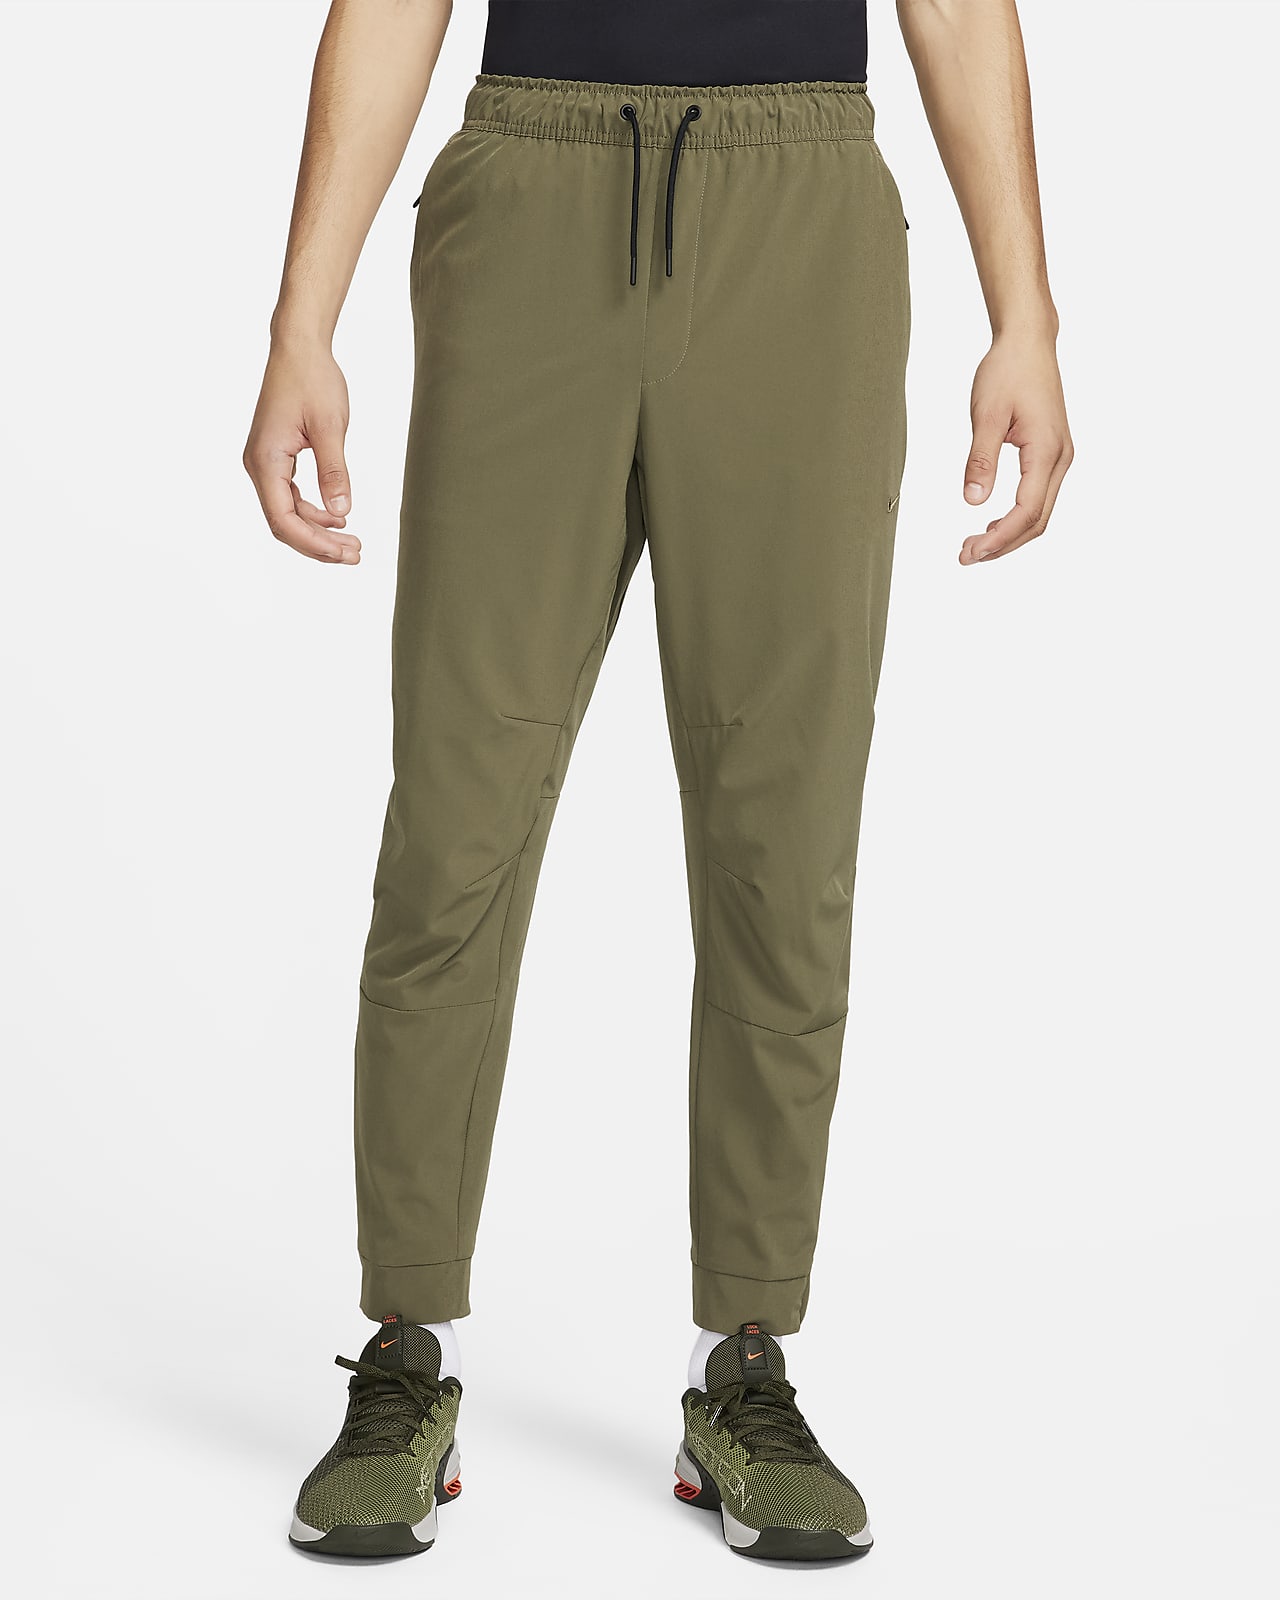 Pantaloni versatili con zip sul bordo Dri-FIT Nike Unlimited – Uomo